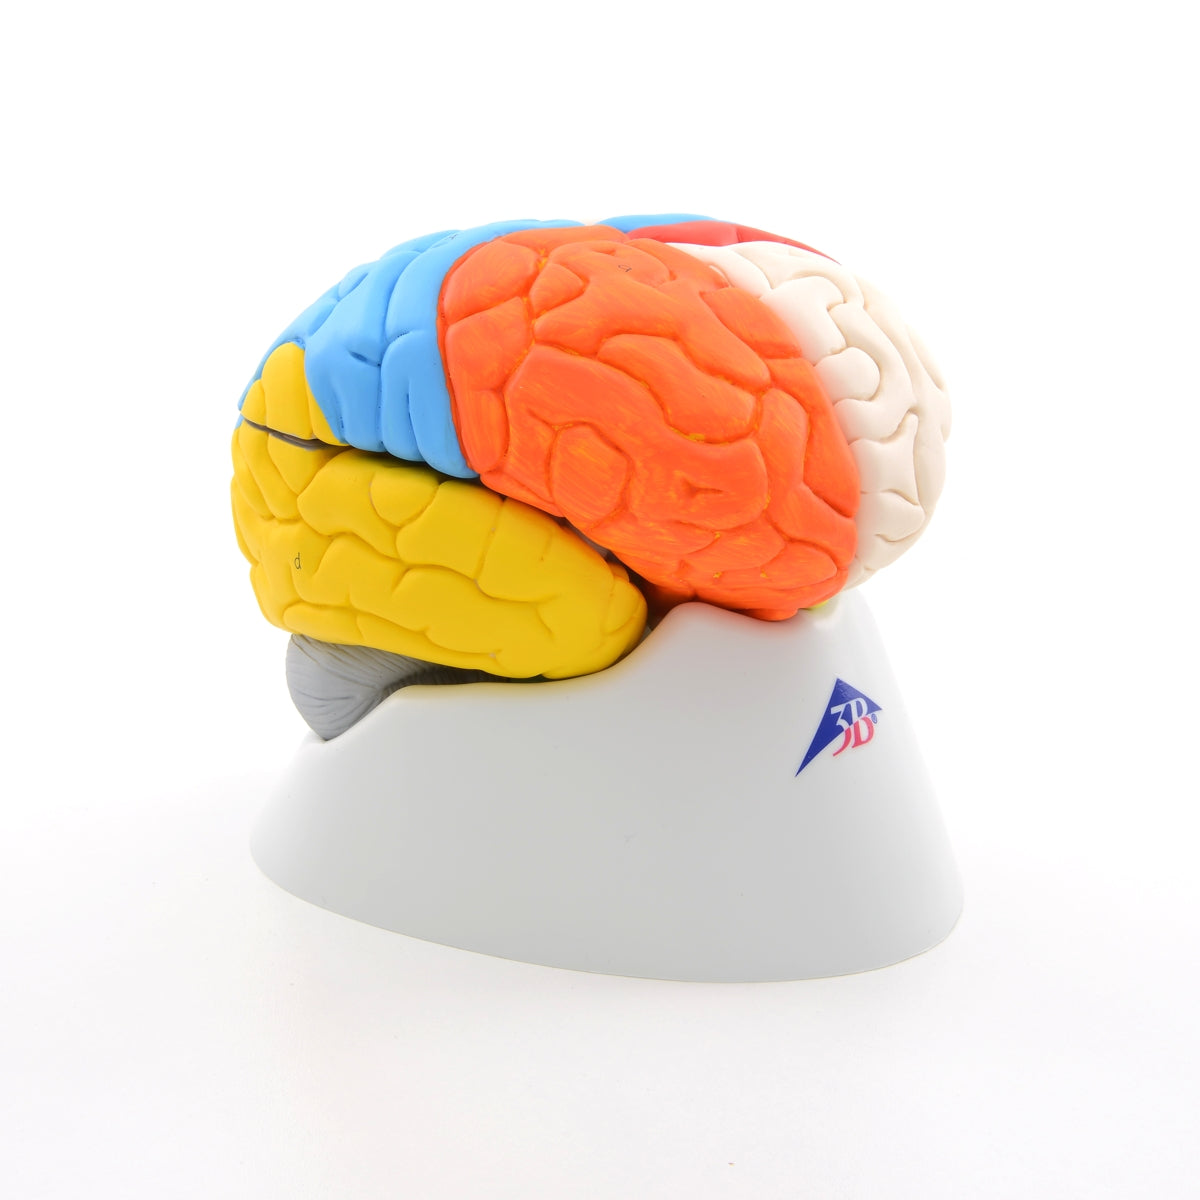 Hjernemodel med de vigtigste områder i pædagogiske farver. Kan adskilles i 8 dele